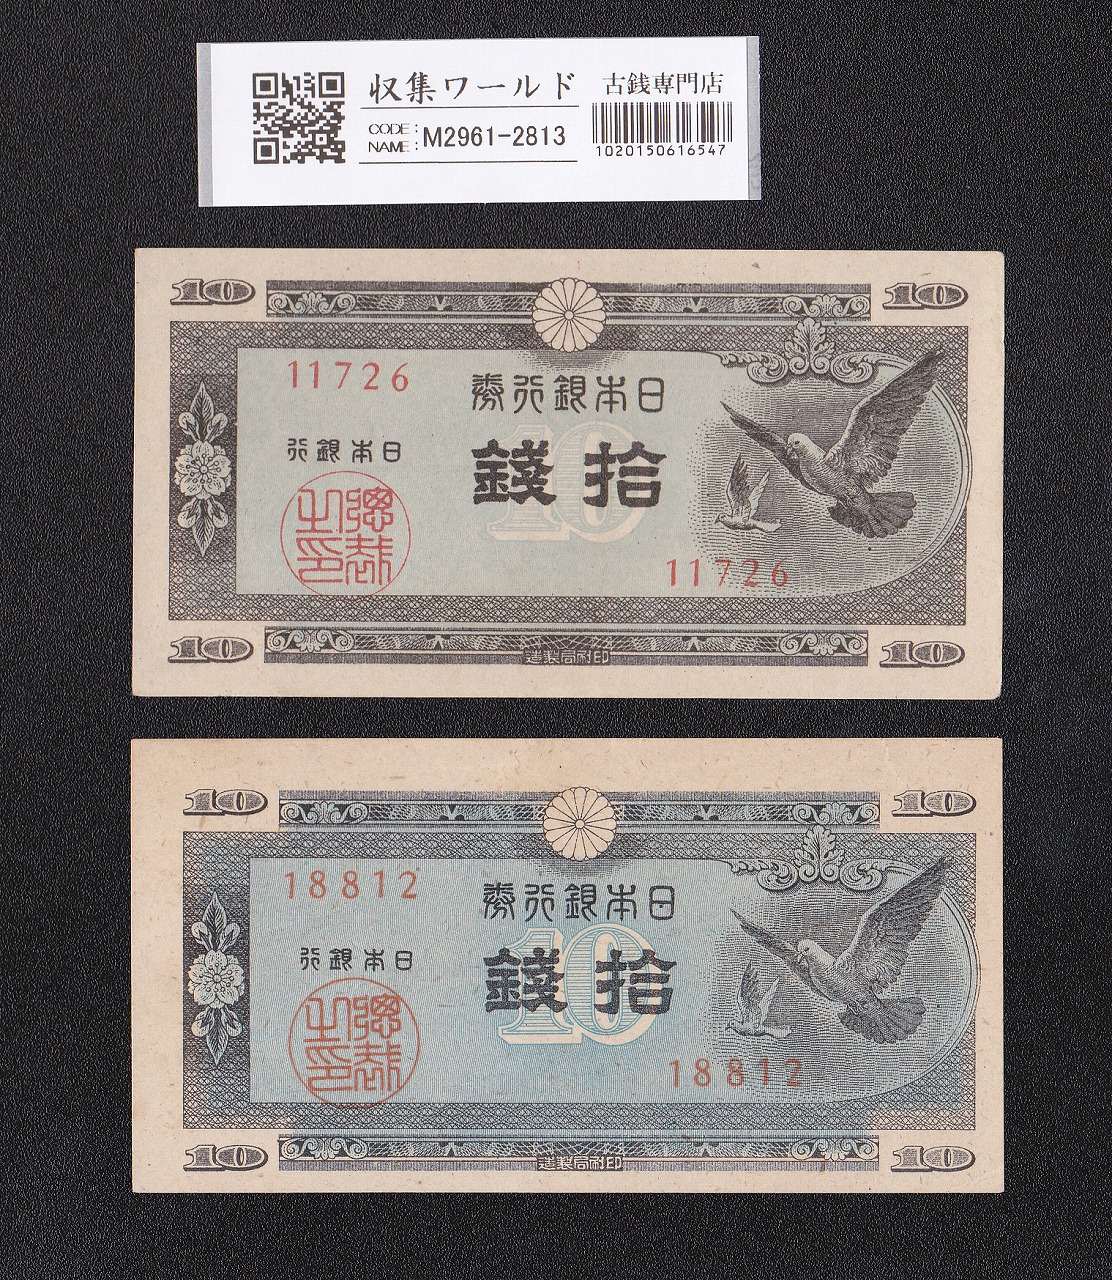 ハト 10銭 日本銀行券A号 1947年銘 2枚セット 未使用 印刷エラー